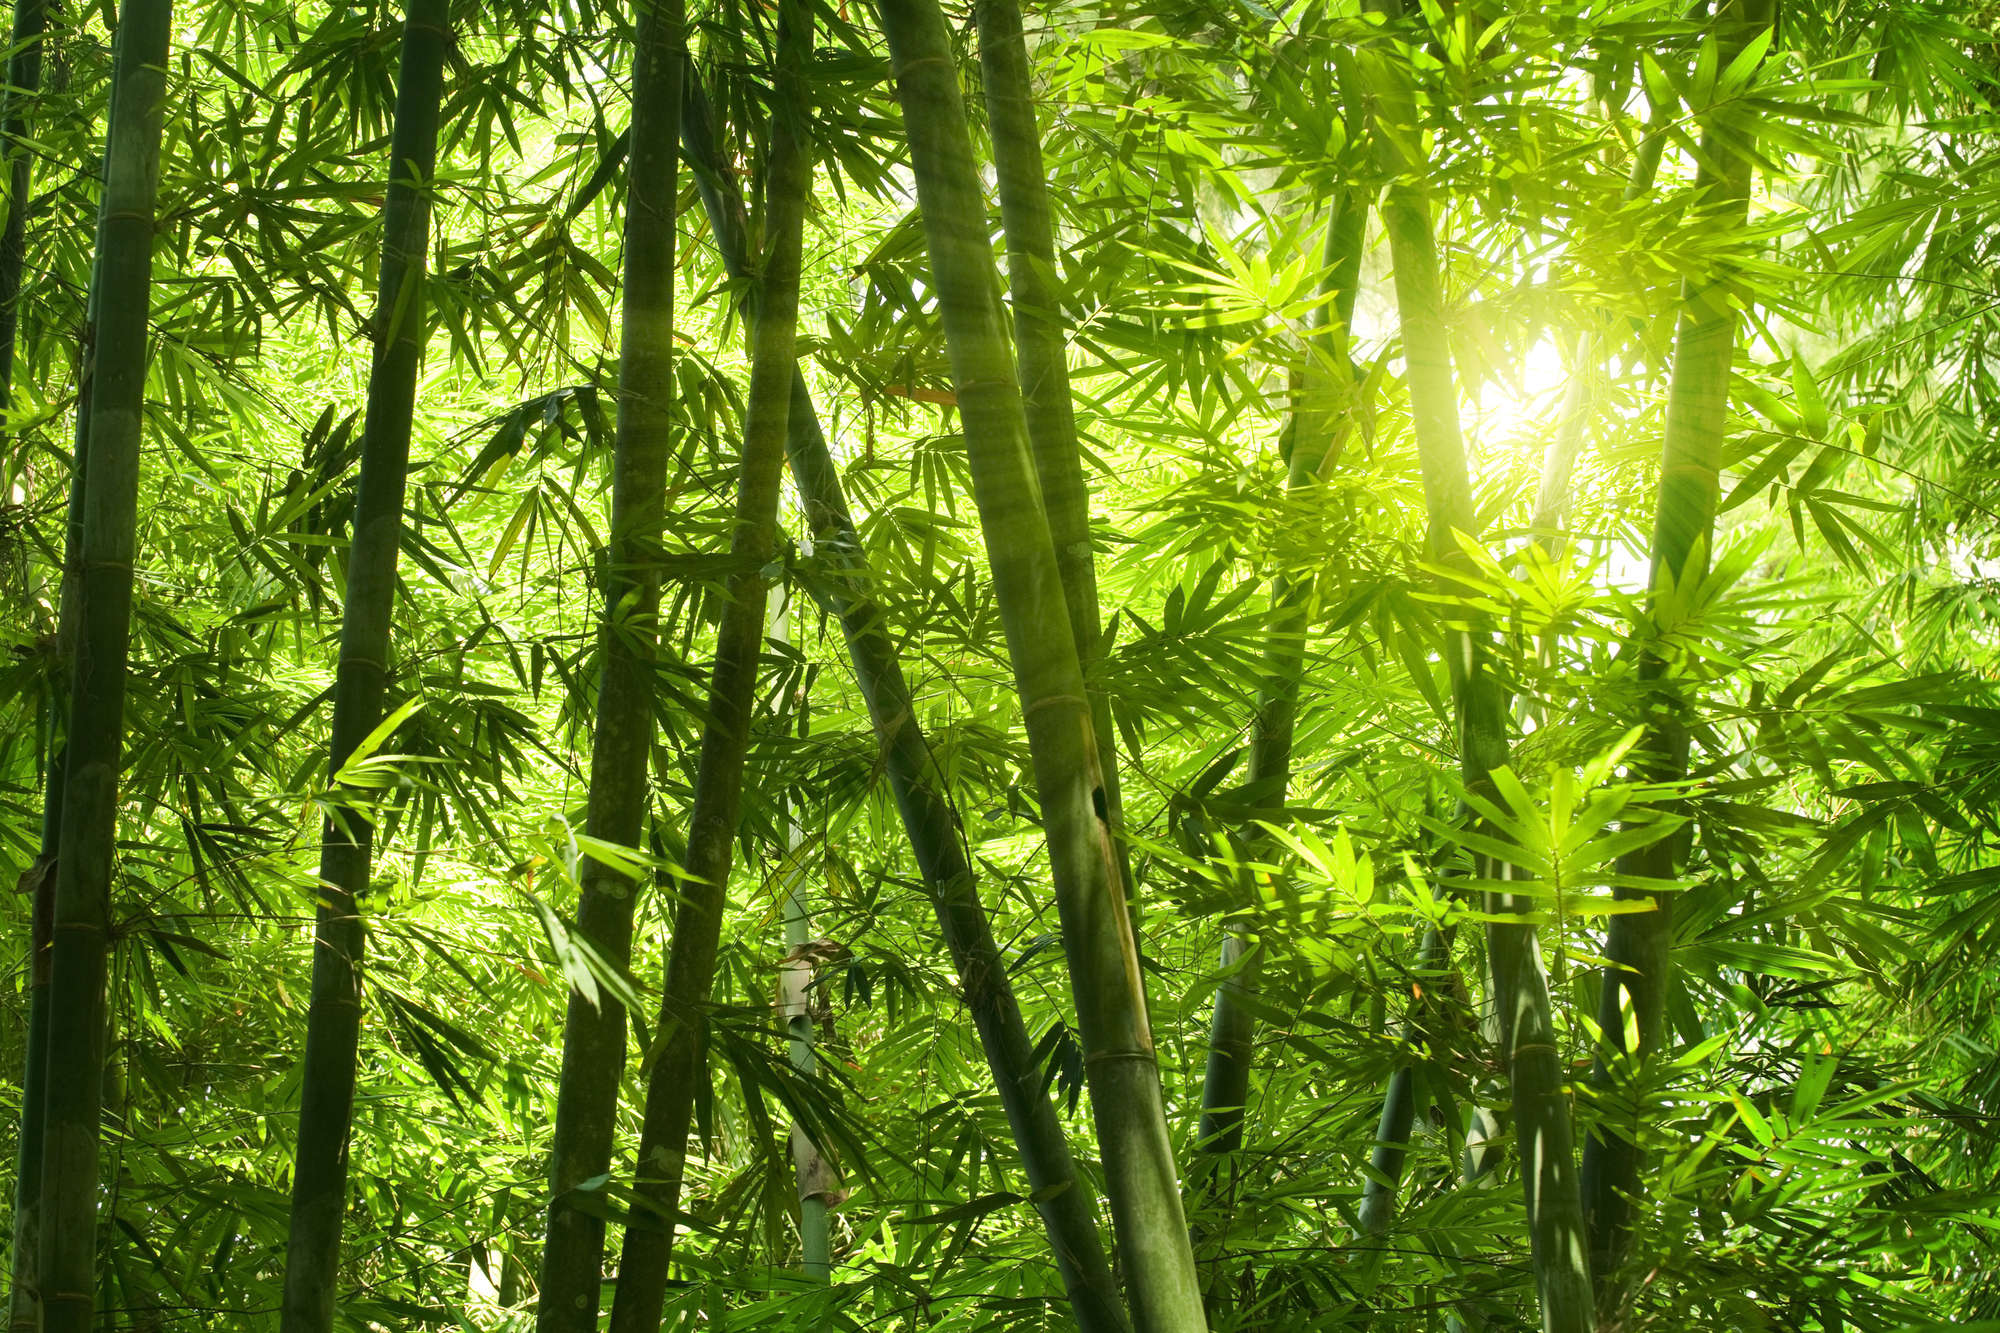             Natur Fototapete Bambuswald Motiv auf Perlmutt Glattvlies
        